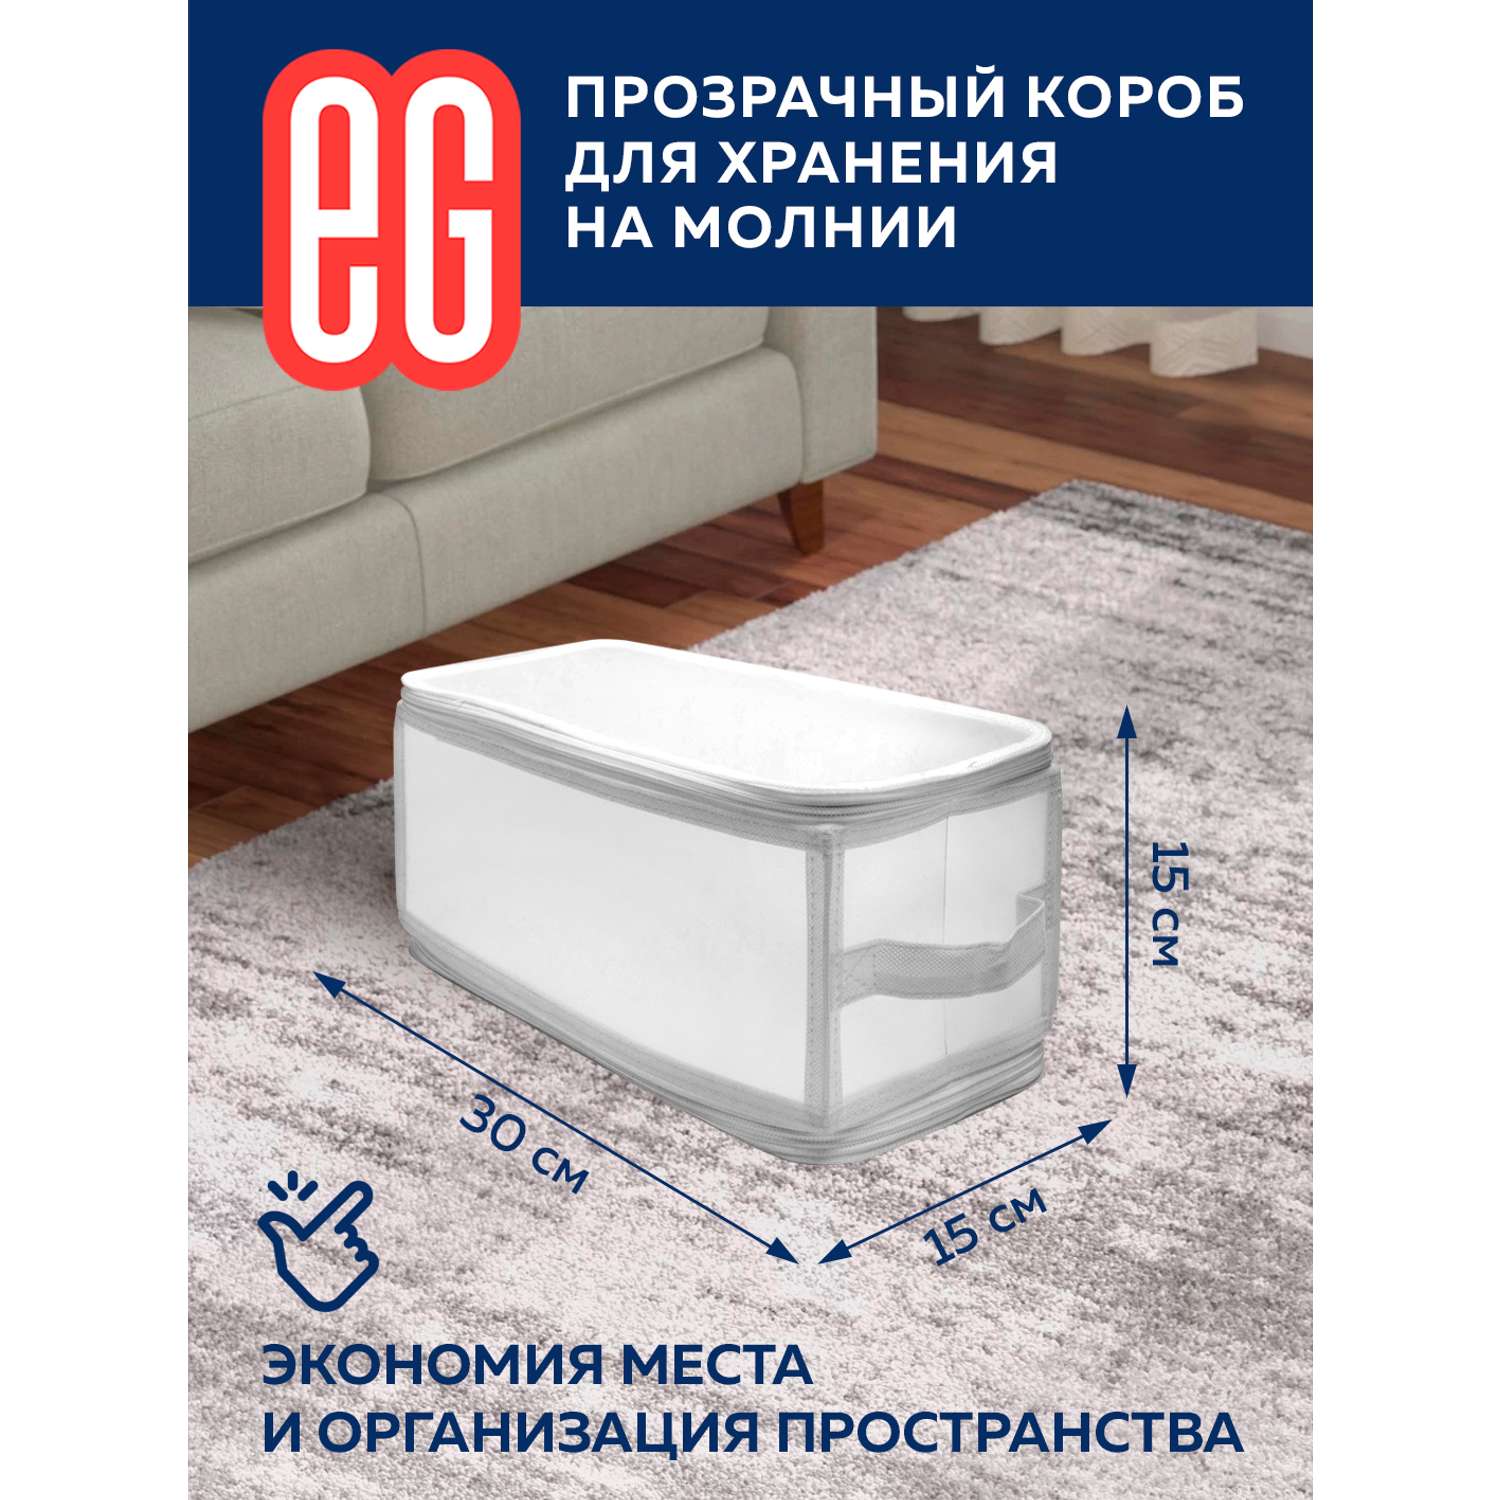 Короб для хранения ЕВРОГАРАНТ серии Zip-box полипропилен 30х15х15 см - фото 2